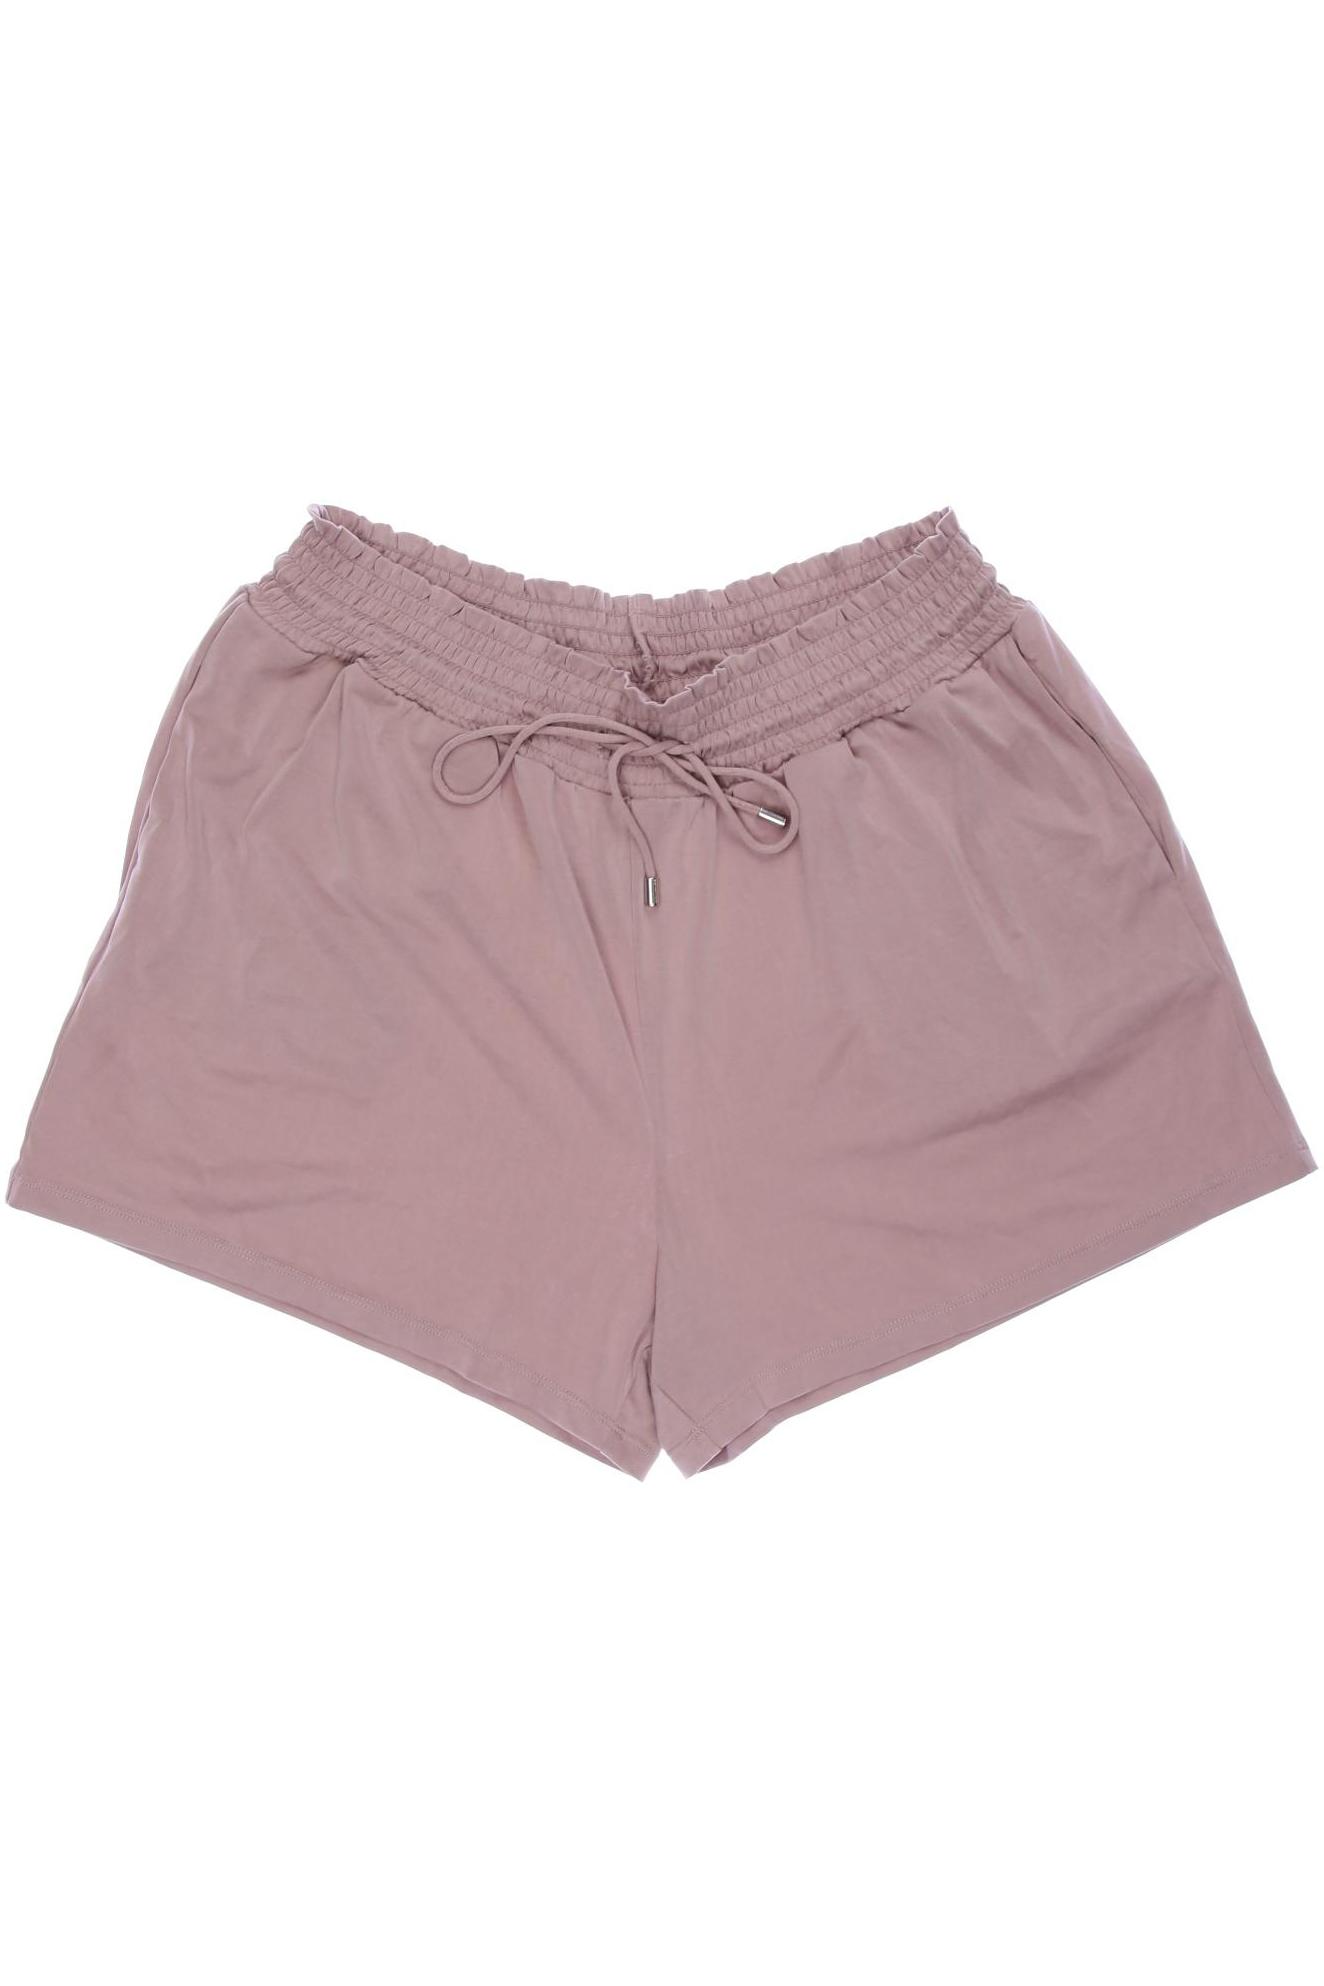 H&M Damen Shorts, pink von H&M